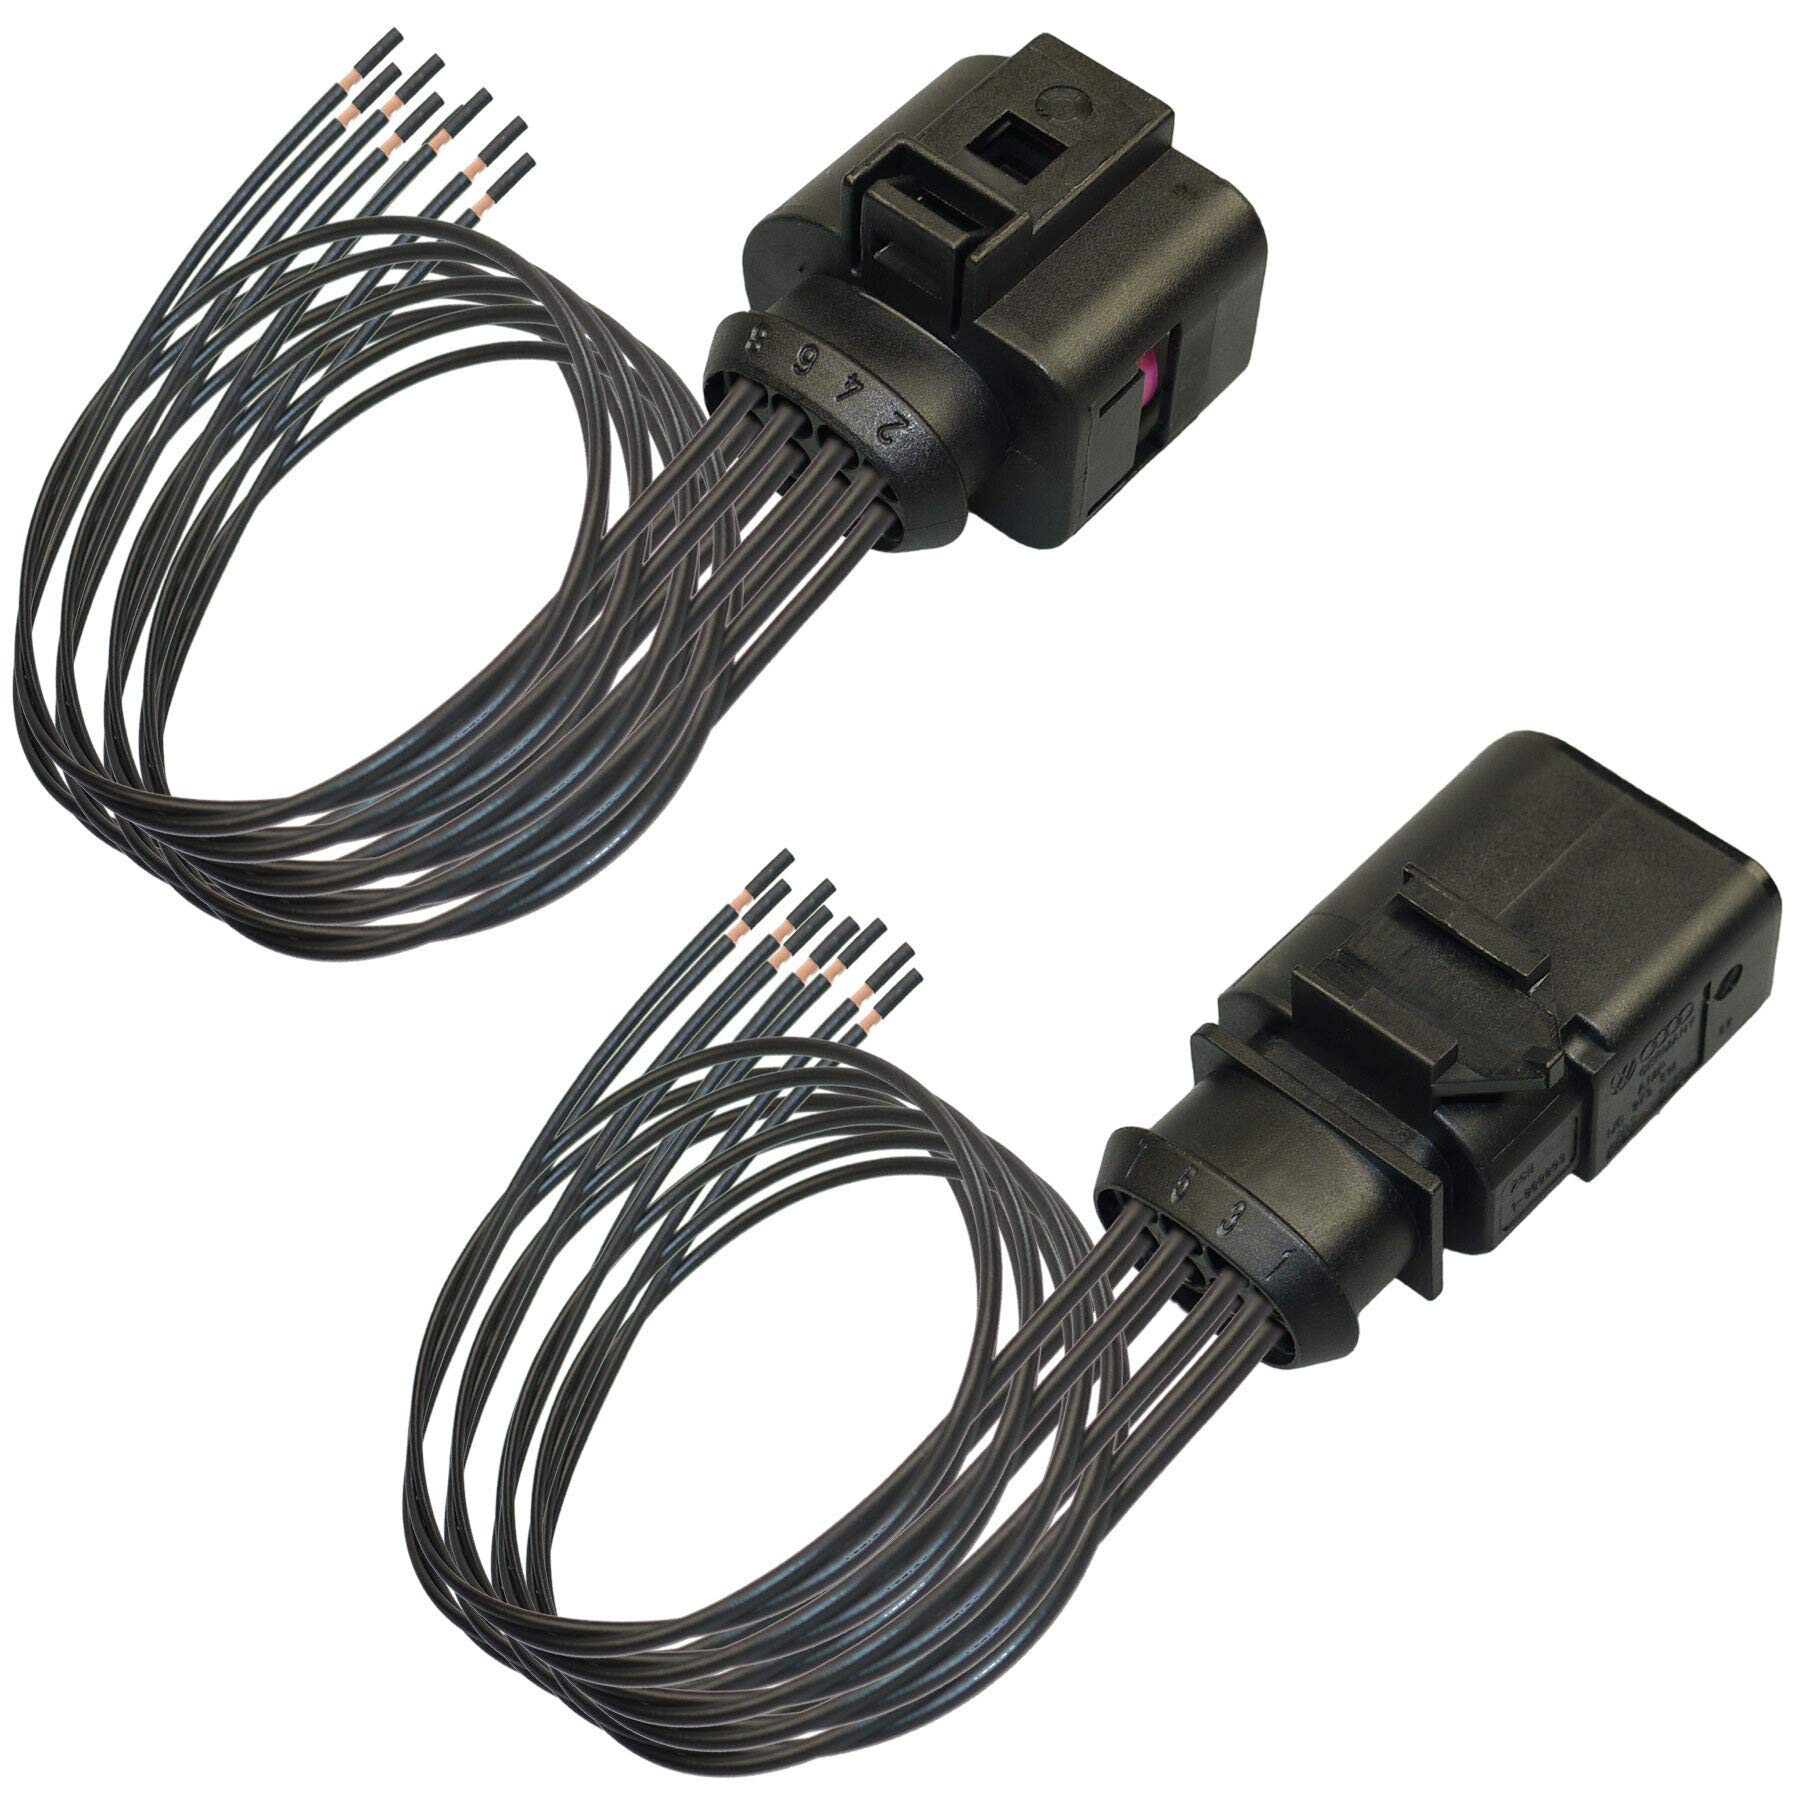 Reparatursatz 8-pol Kabelsatz Stecker Set kompatibel zu VW Audi SEAT Skoda 1J0973714 / 1J0973814 Stift/Buchse von Cable Solution